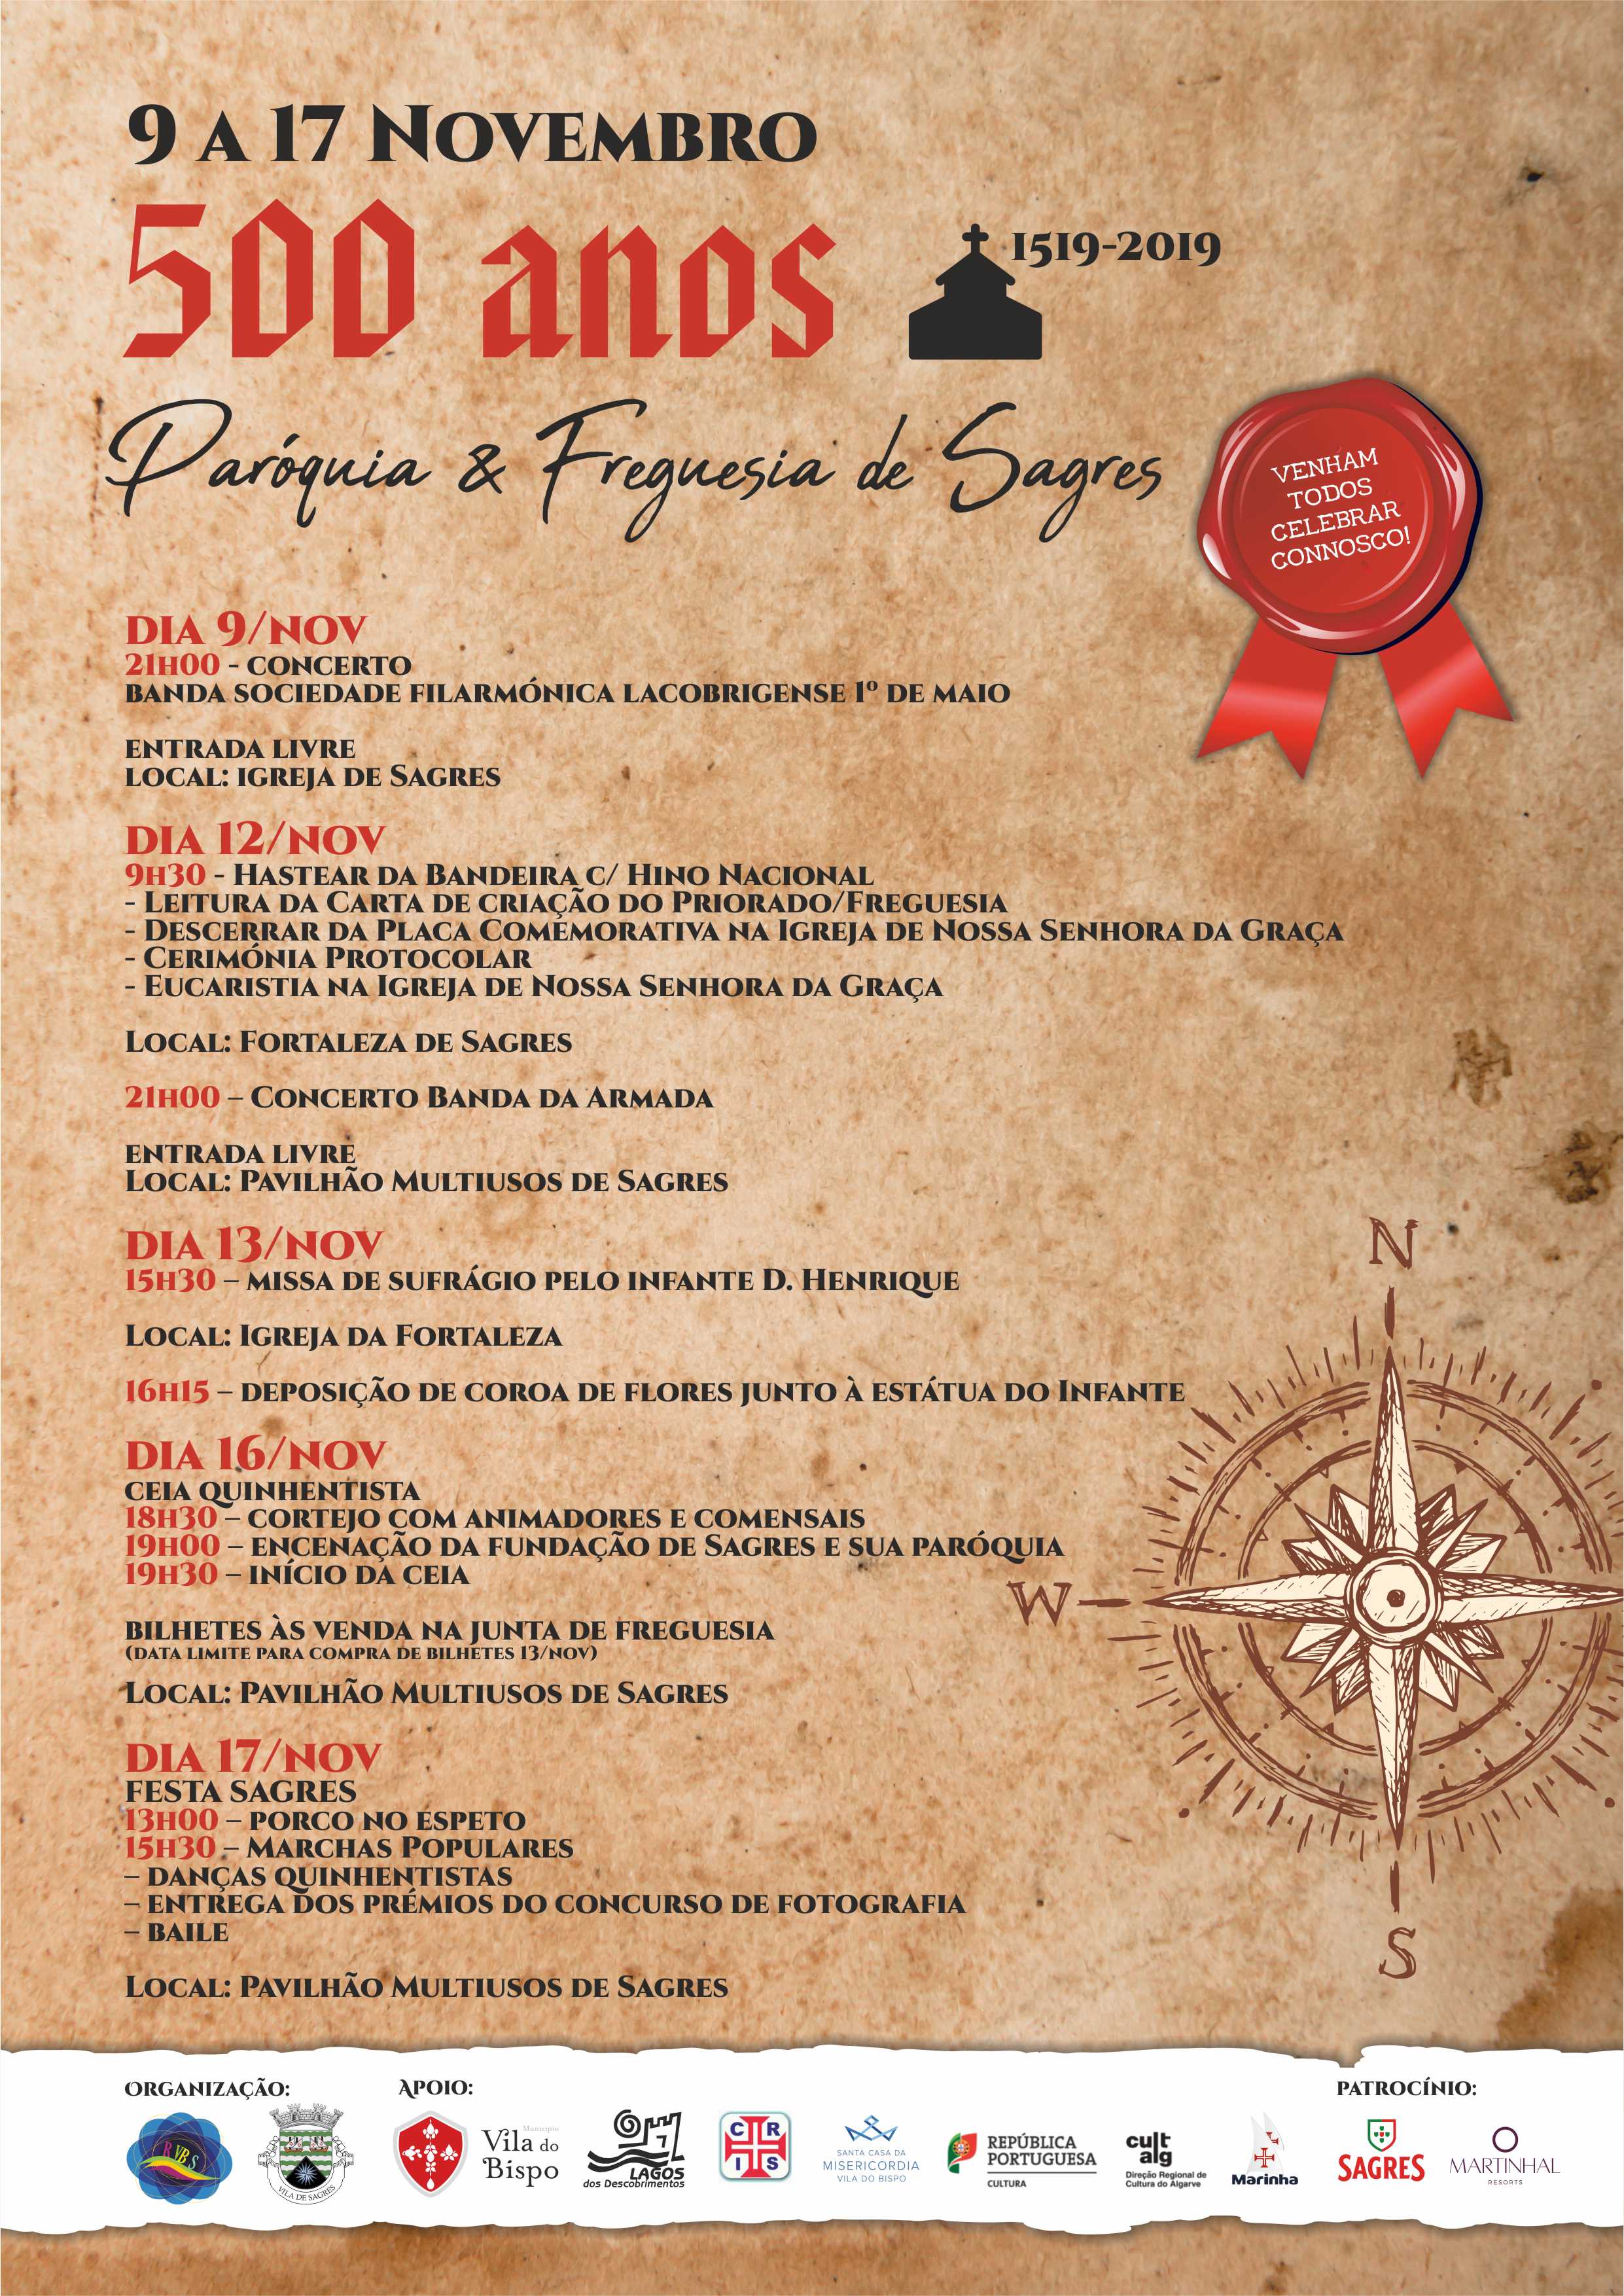 Sagres celebra os 500 anos da fundação da Paróquia e da Freguesia com vários eventos de cariz religioso, histórico e cultural